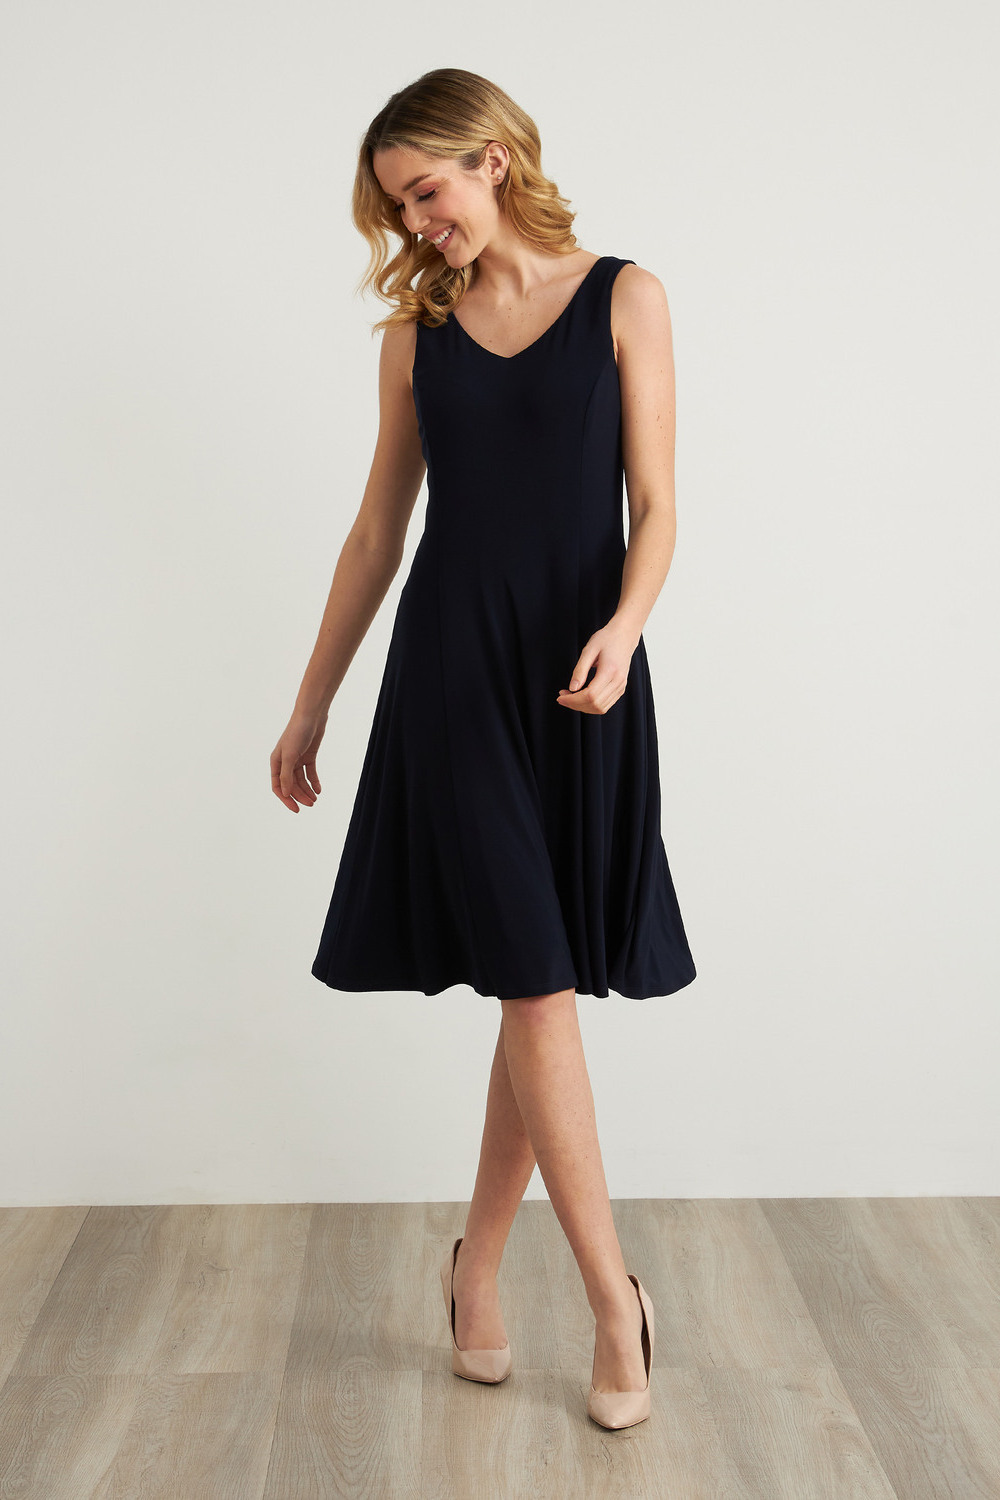 Joseph Ribkoff Fit & Flare Dress Style 211316. Midnight Blue